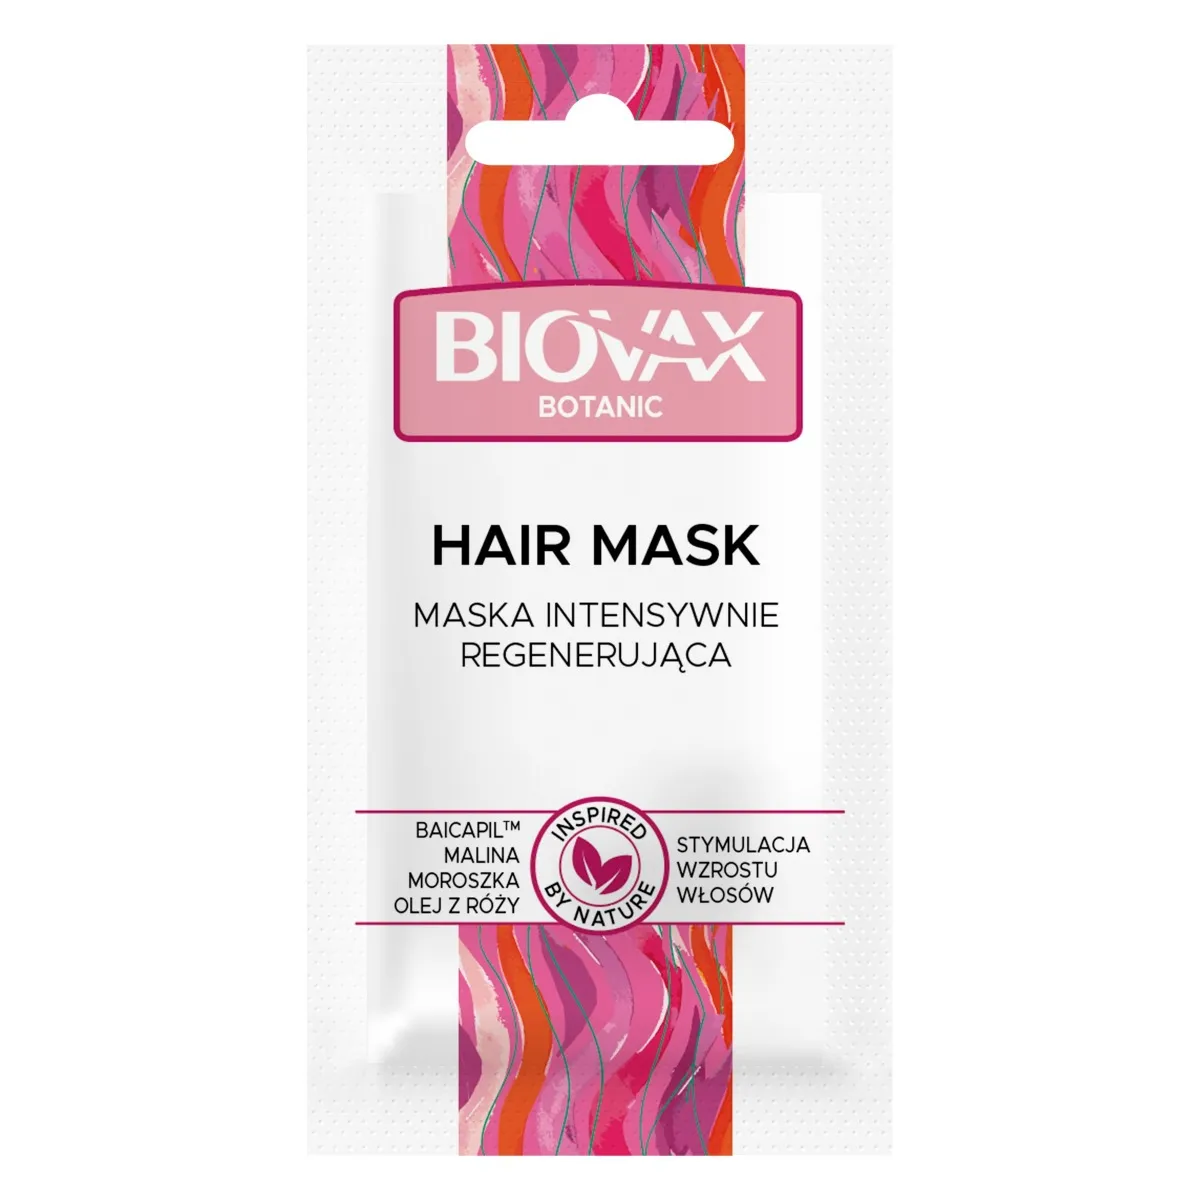 Biovax Botanic, maseczka intensywnie regenerująca stymulacja wzrostu włosów, 20 ml